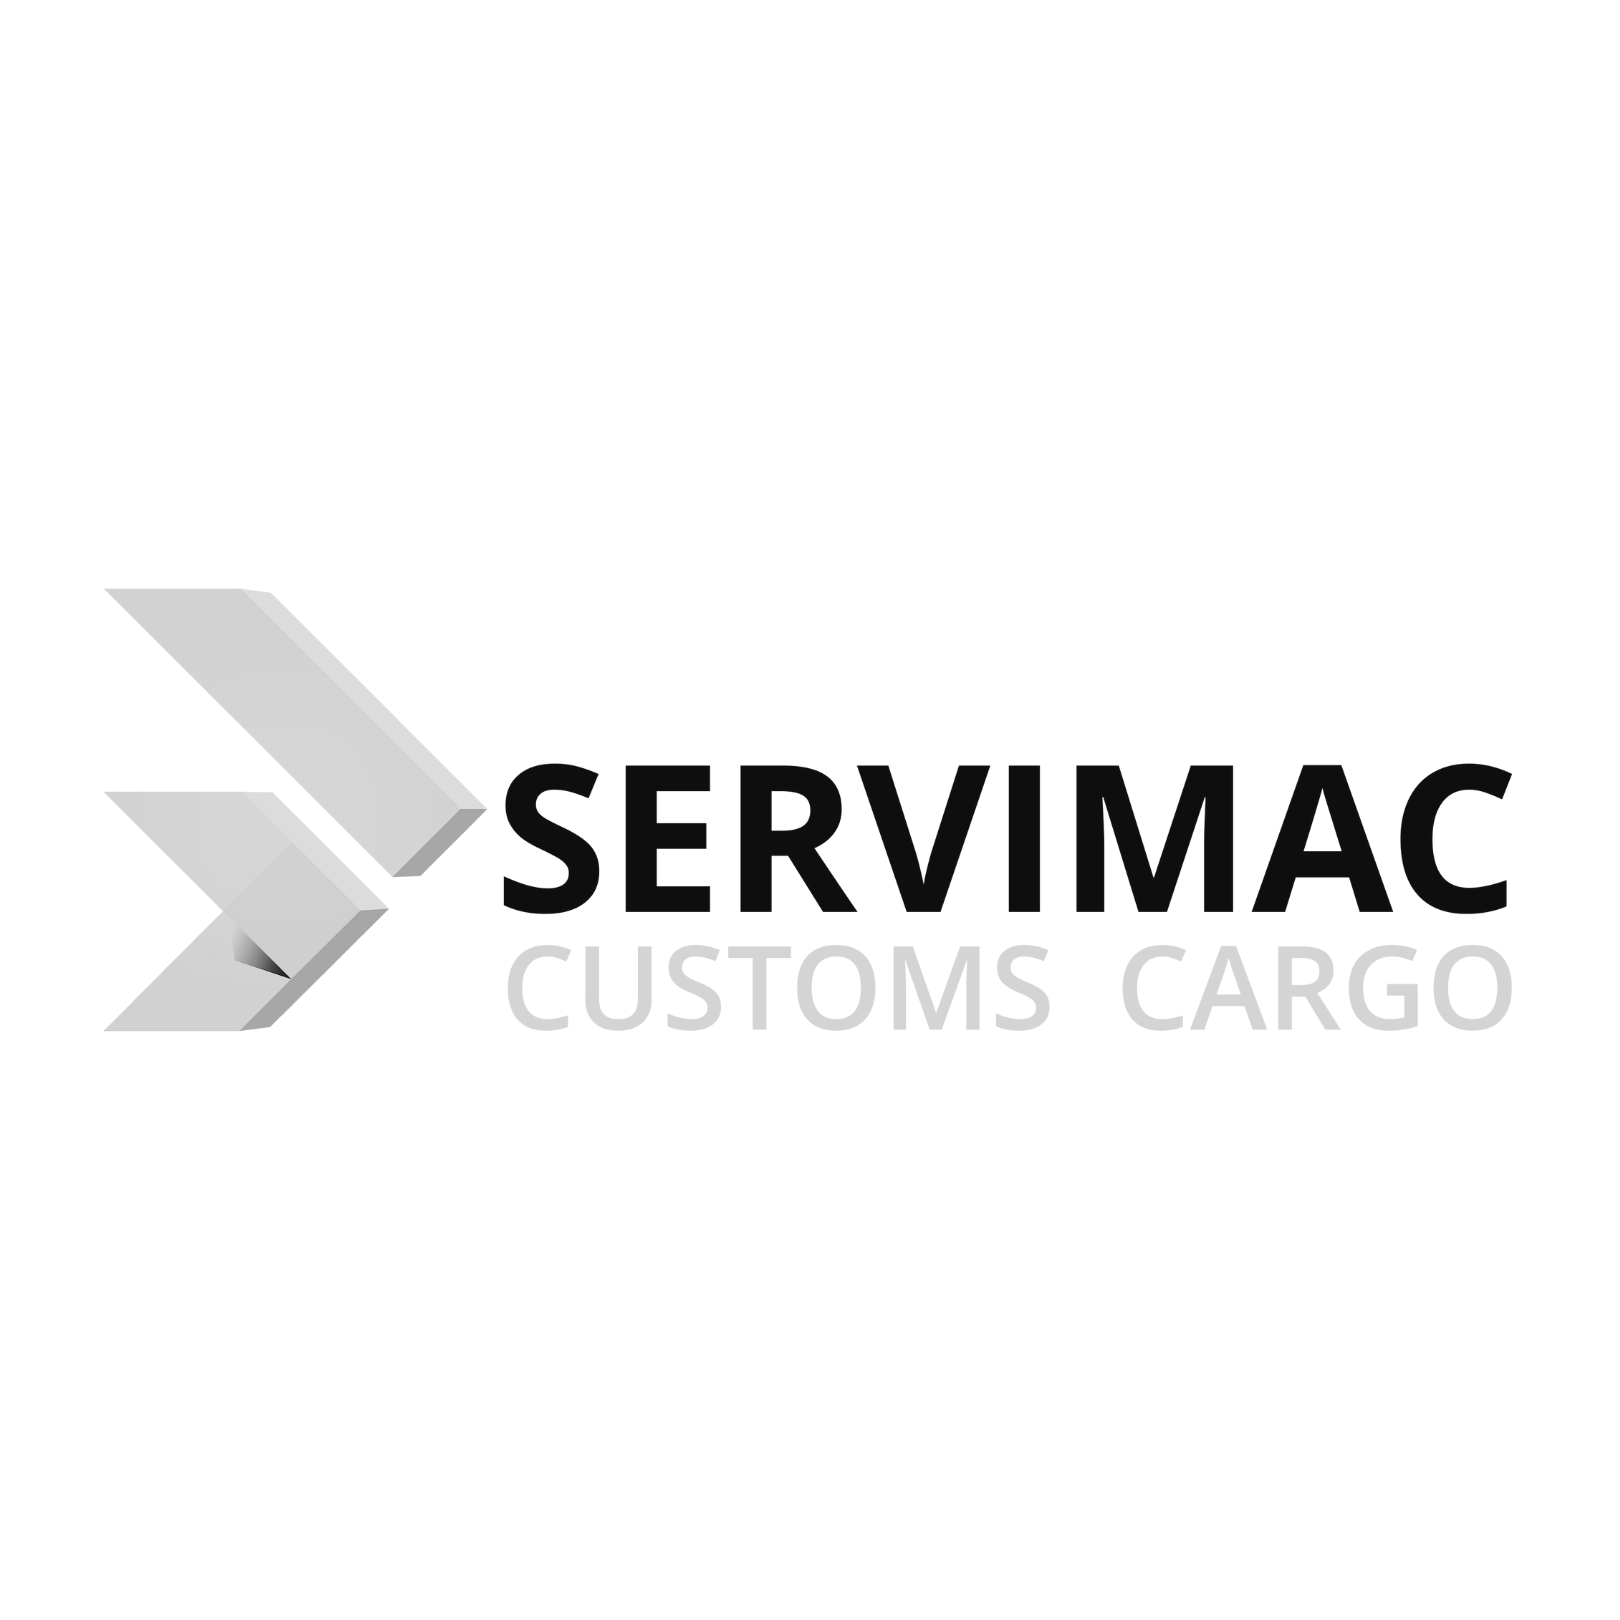 Servimac Nuevo Logo